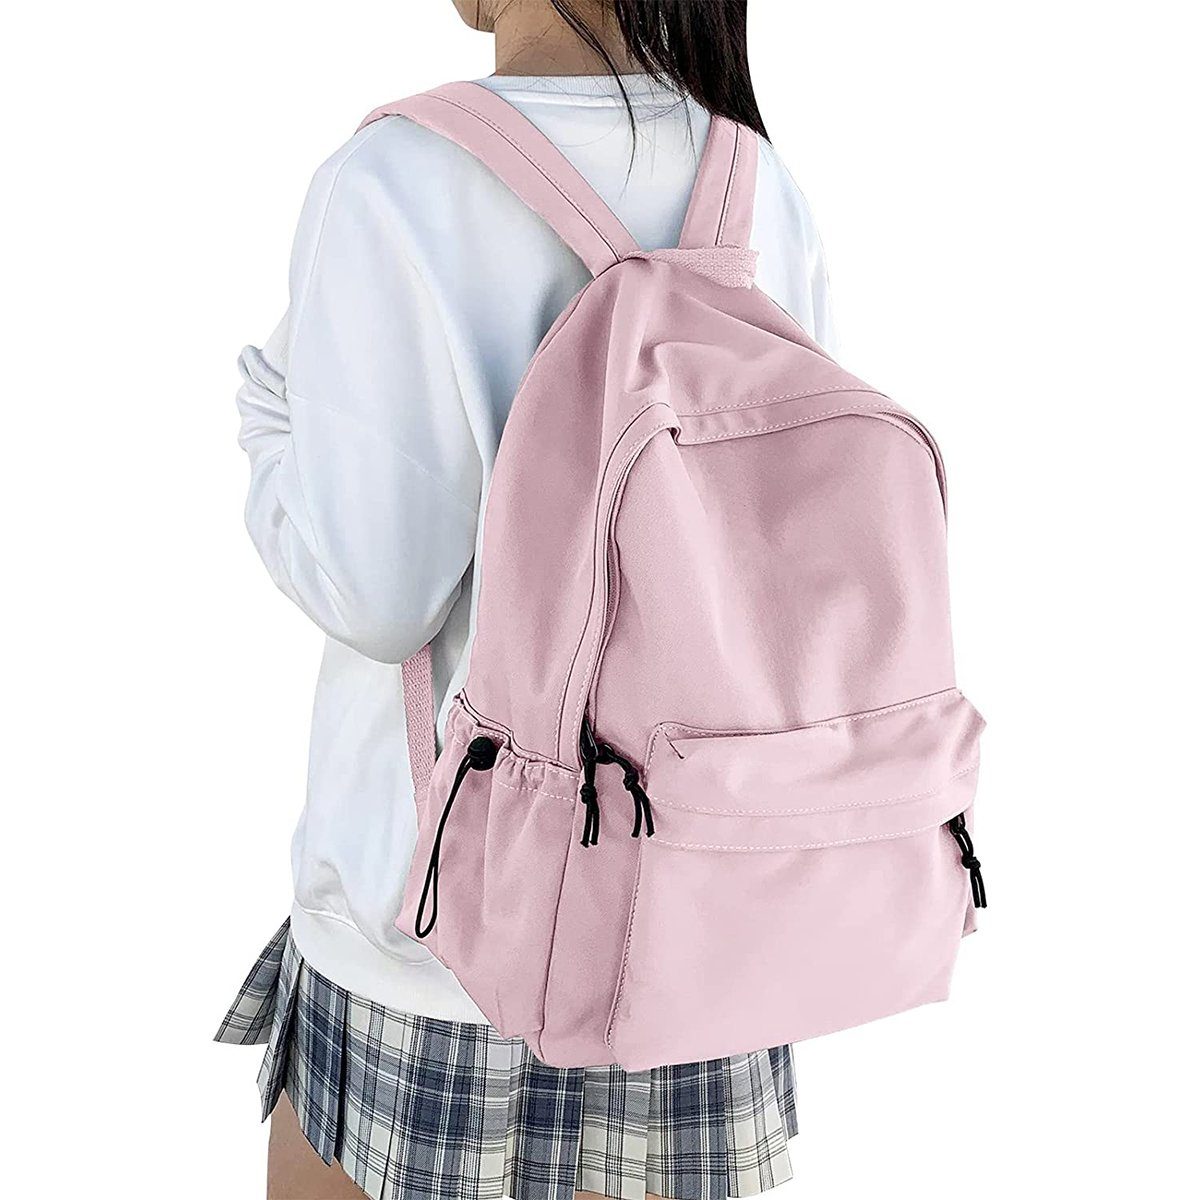 XDeer Schulrucksack Schulrucksack Damen Travel Schultaschen, 15,6 Zoll Laptop Rucksack für Mädchen im Teenageralter Bookbag Rosa